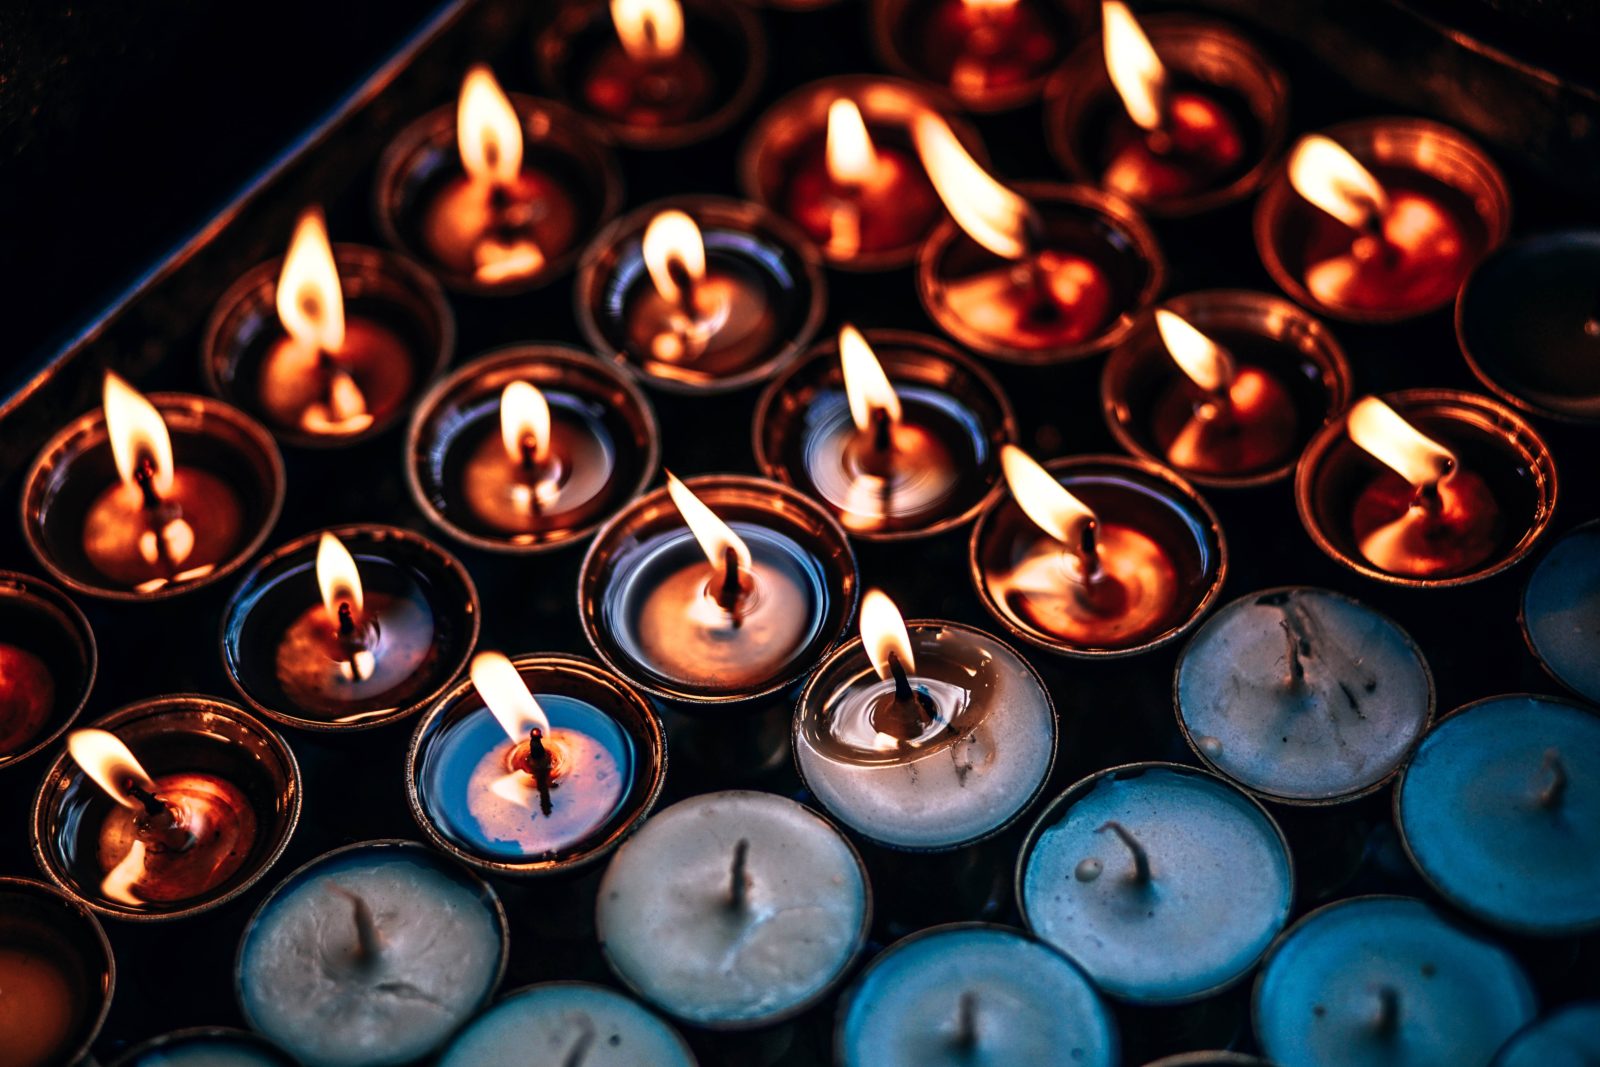  Candle Reş - Wateya wê çi ye? Dizanin çawa bikar bînin